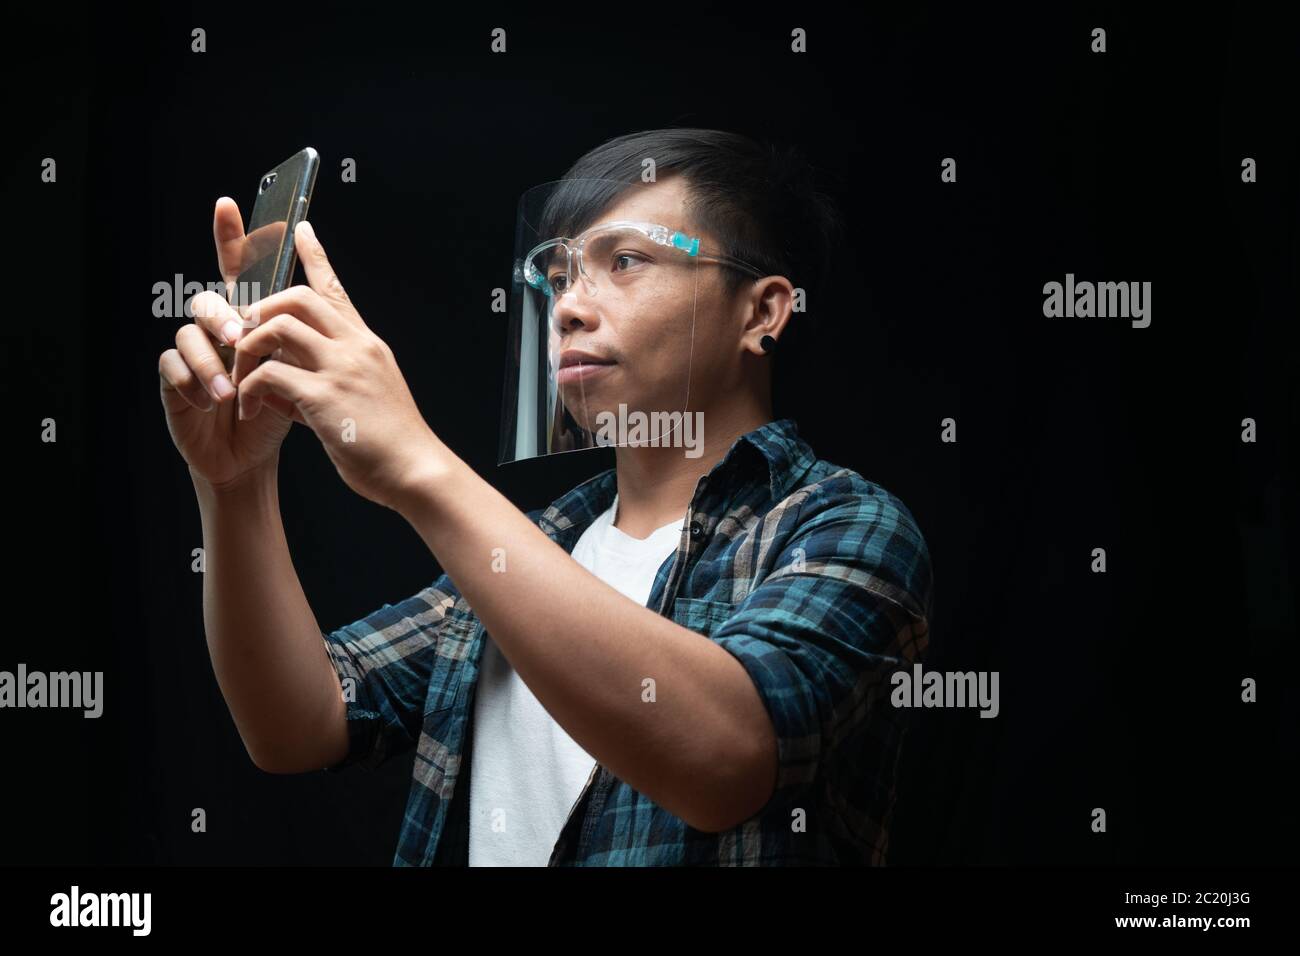 El hombre lleva un protector facial utilizando el smartphone hacer una foto sobre el fondo negro aislado Foto de stock